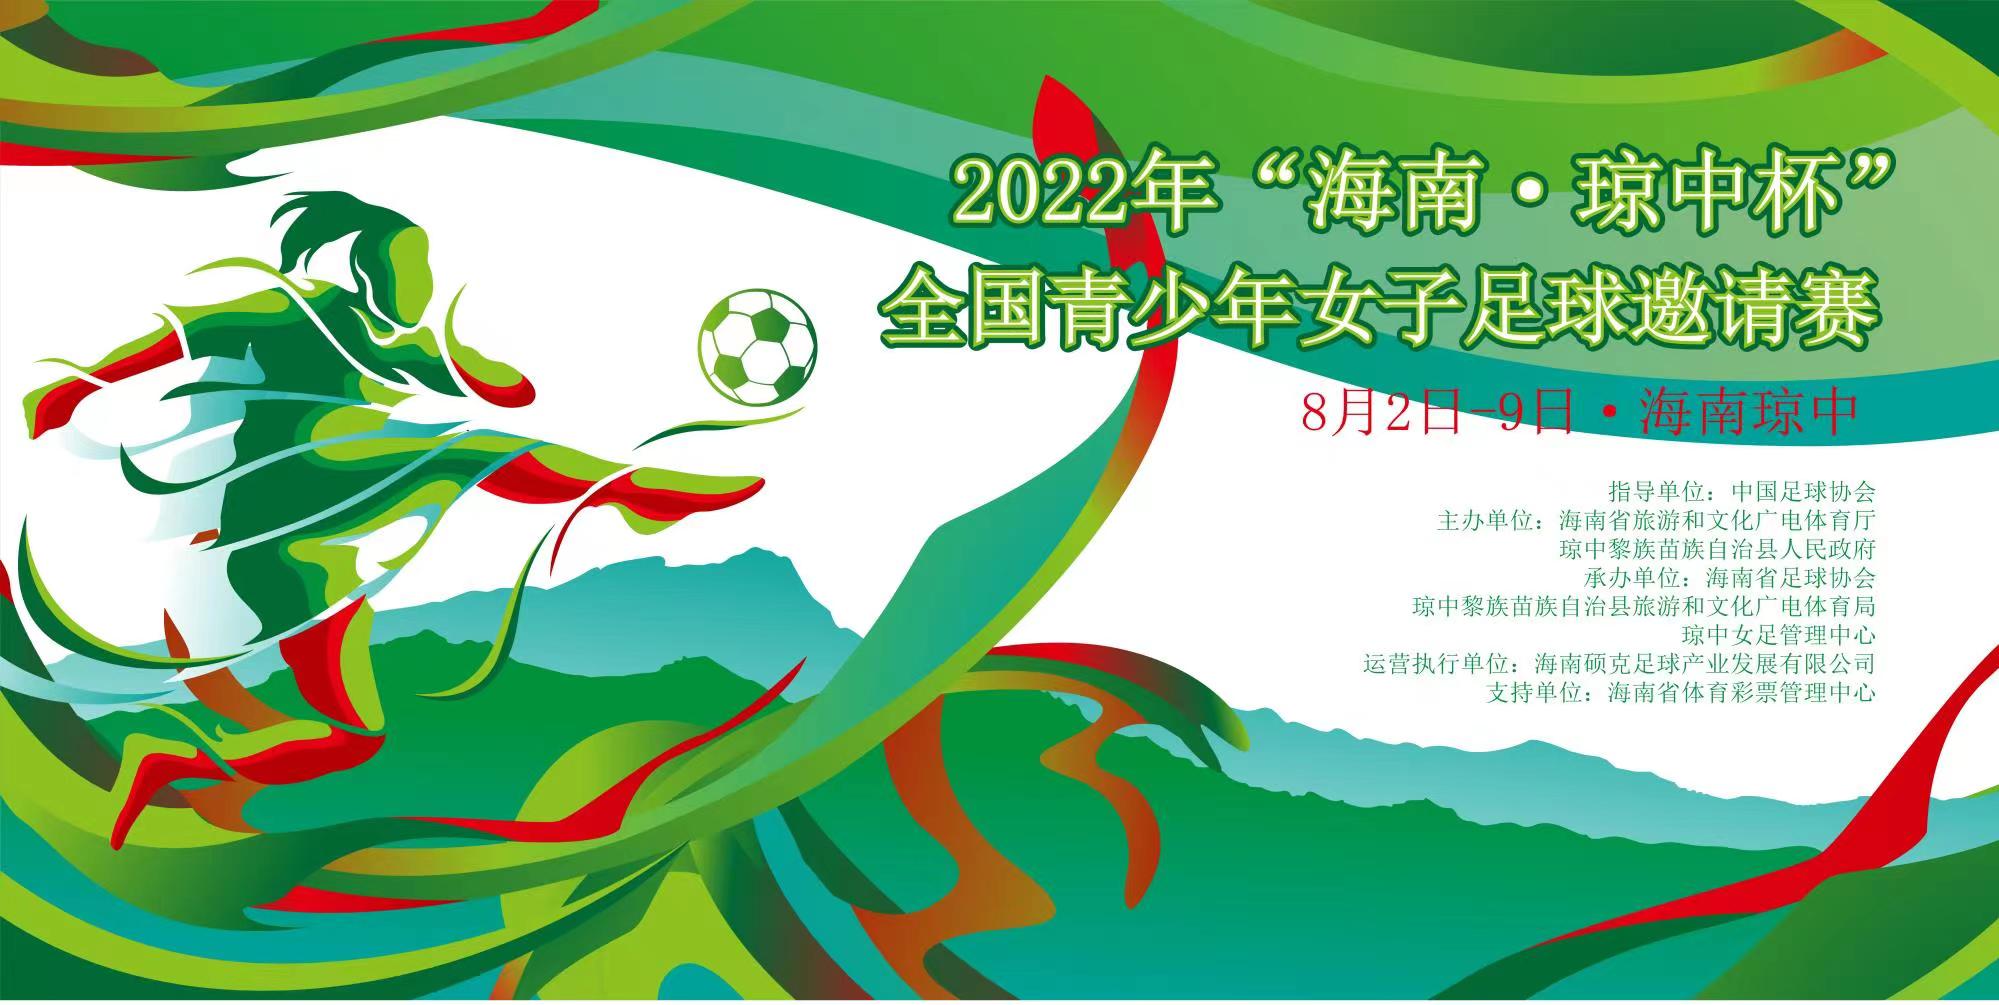 2022年“海南·琼中杯”全国青少年女子足球邀请赛8月7日